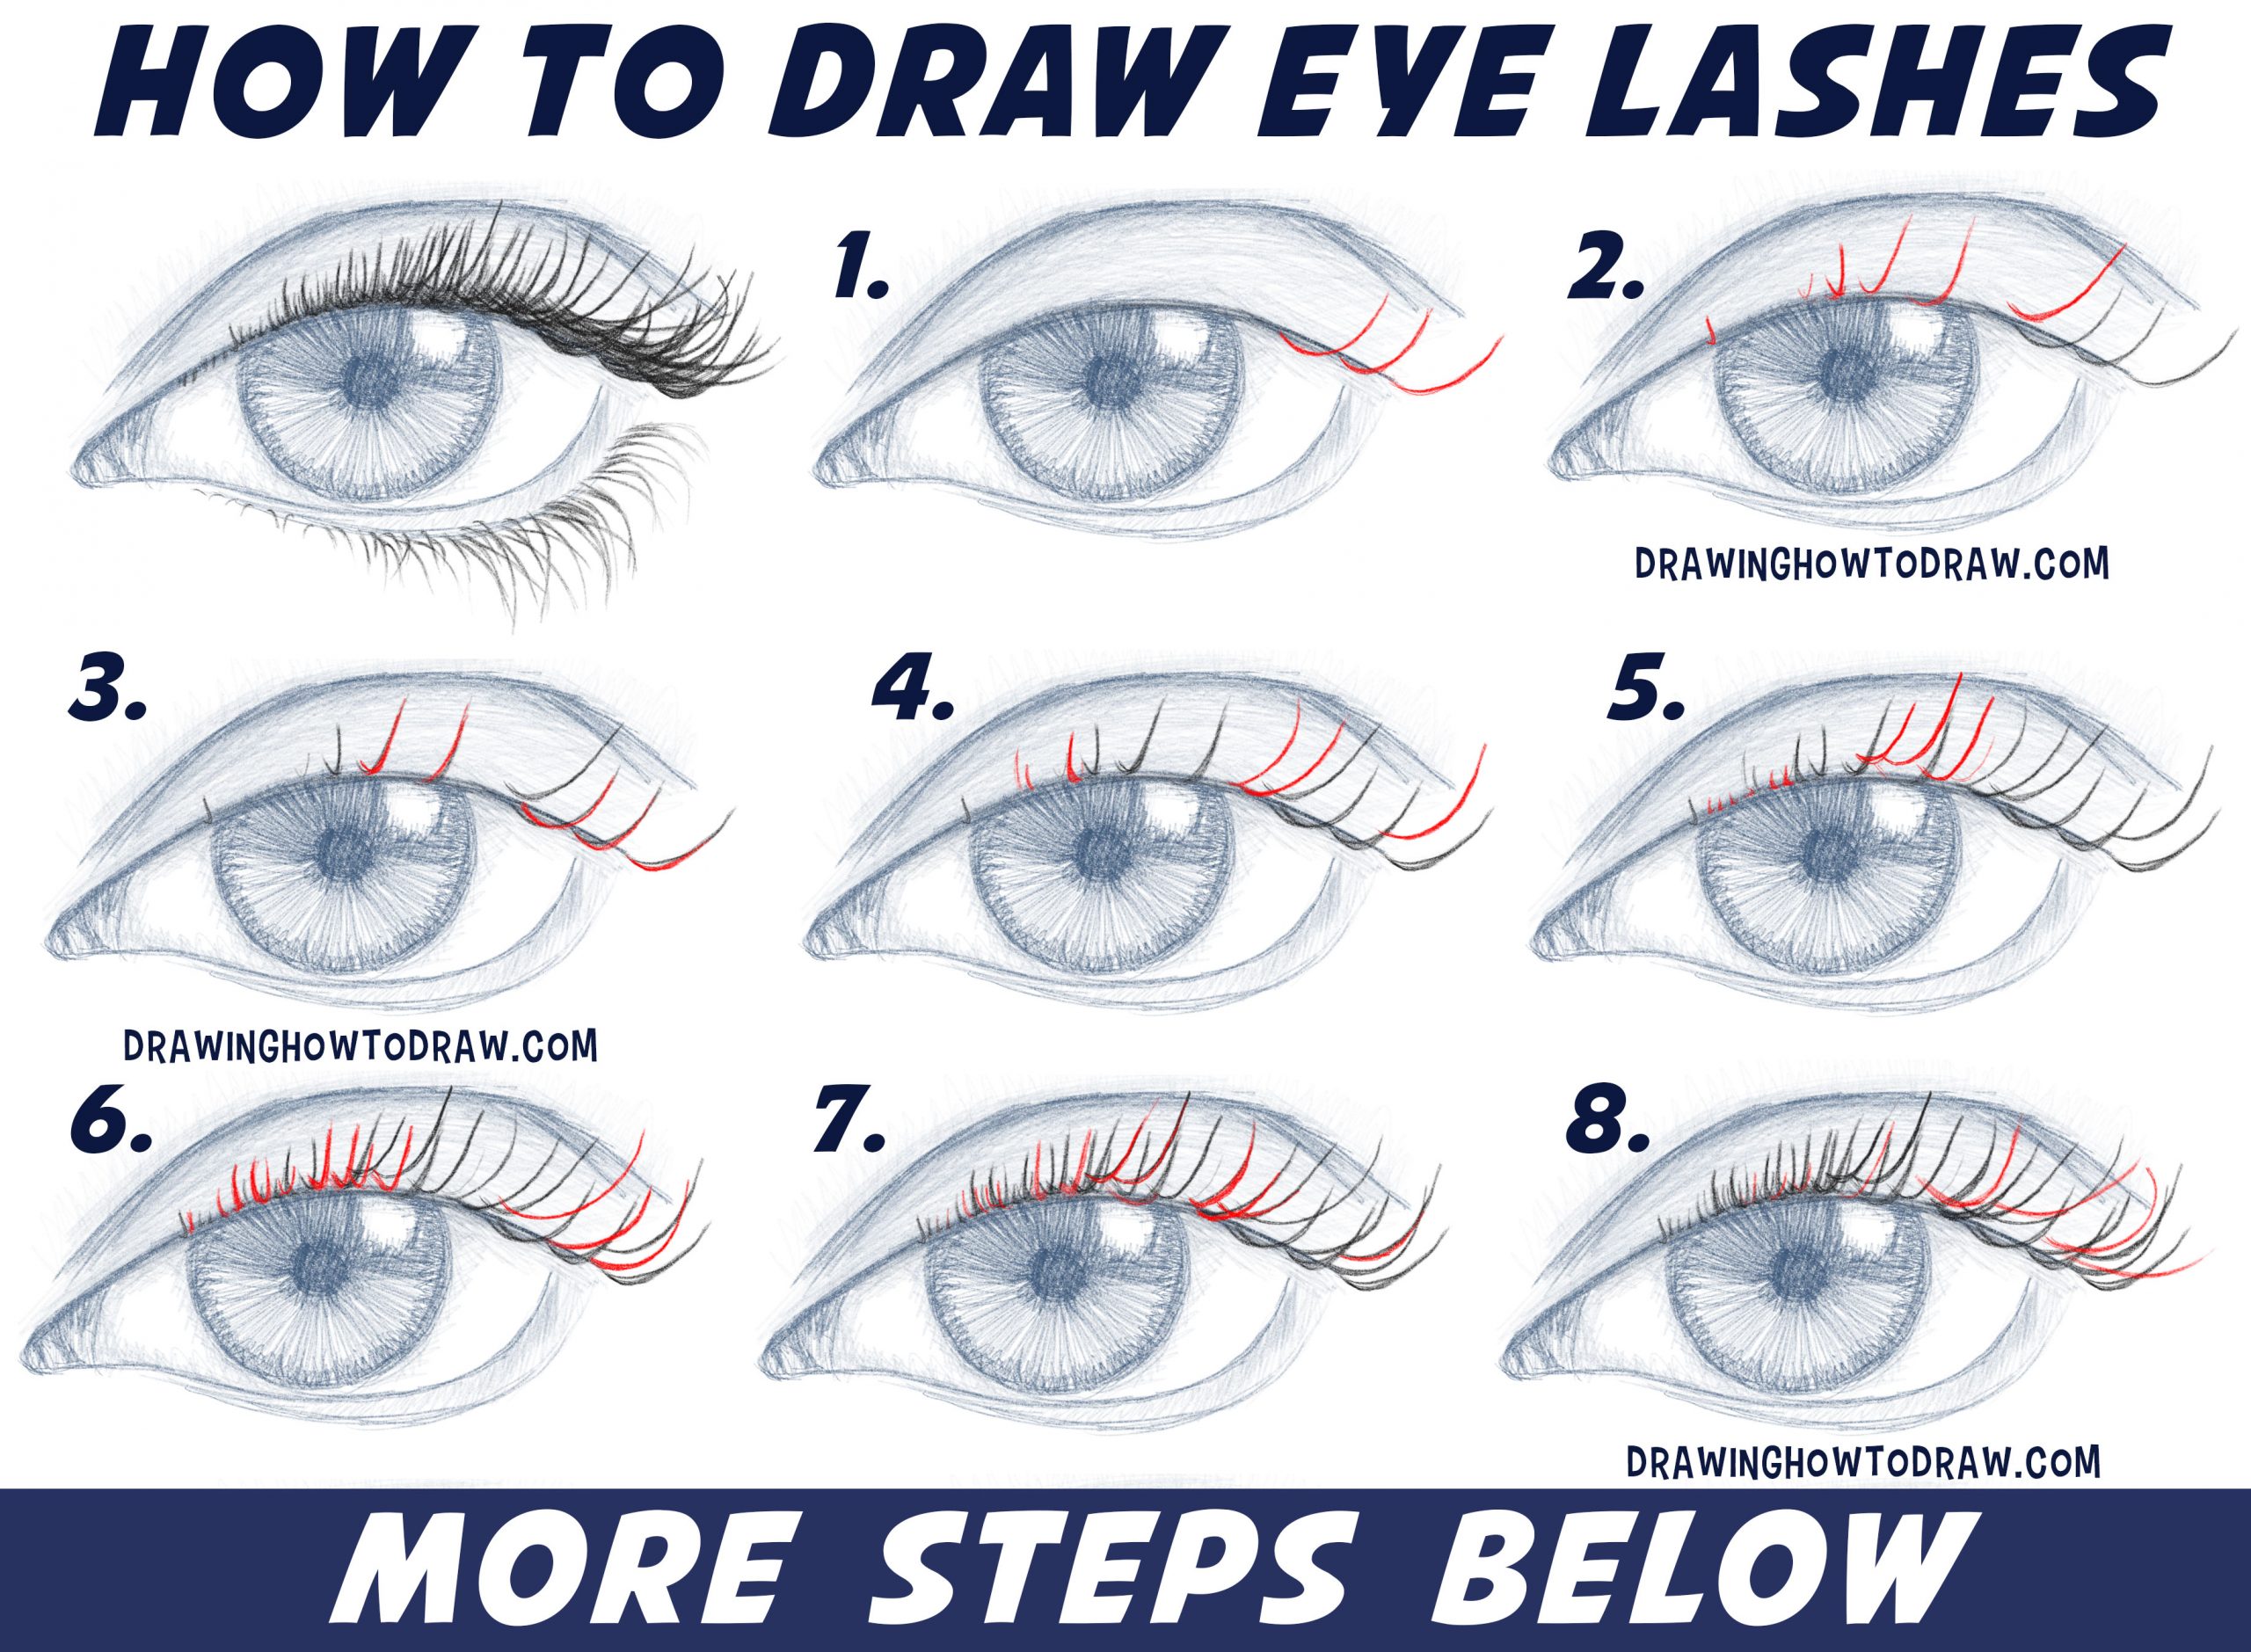 How Do You Draw Eyelashes?